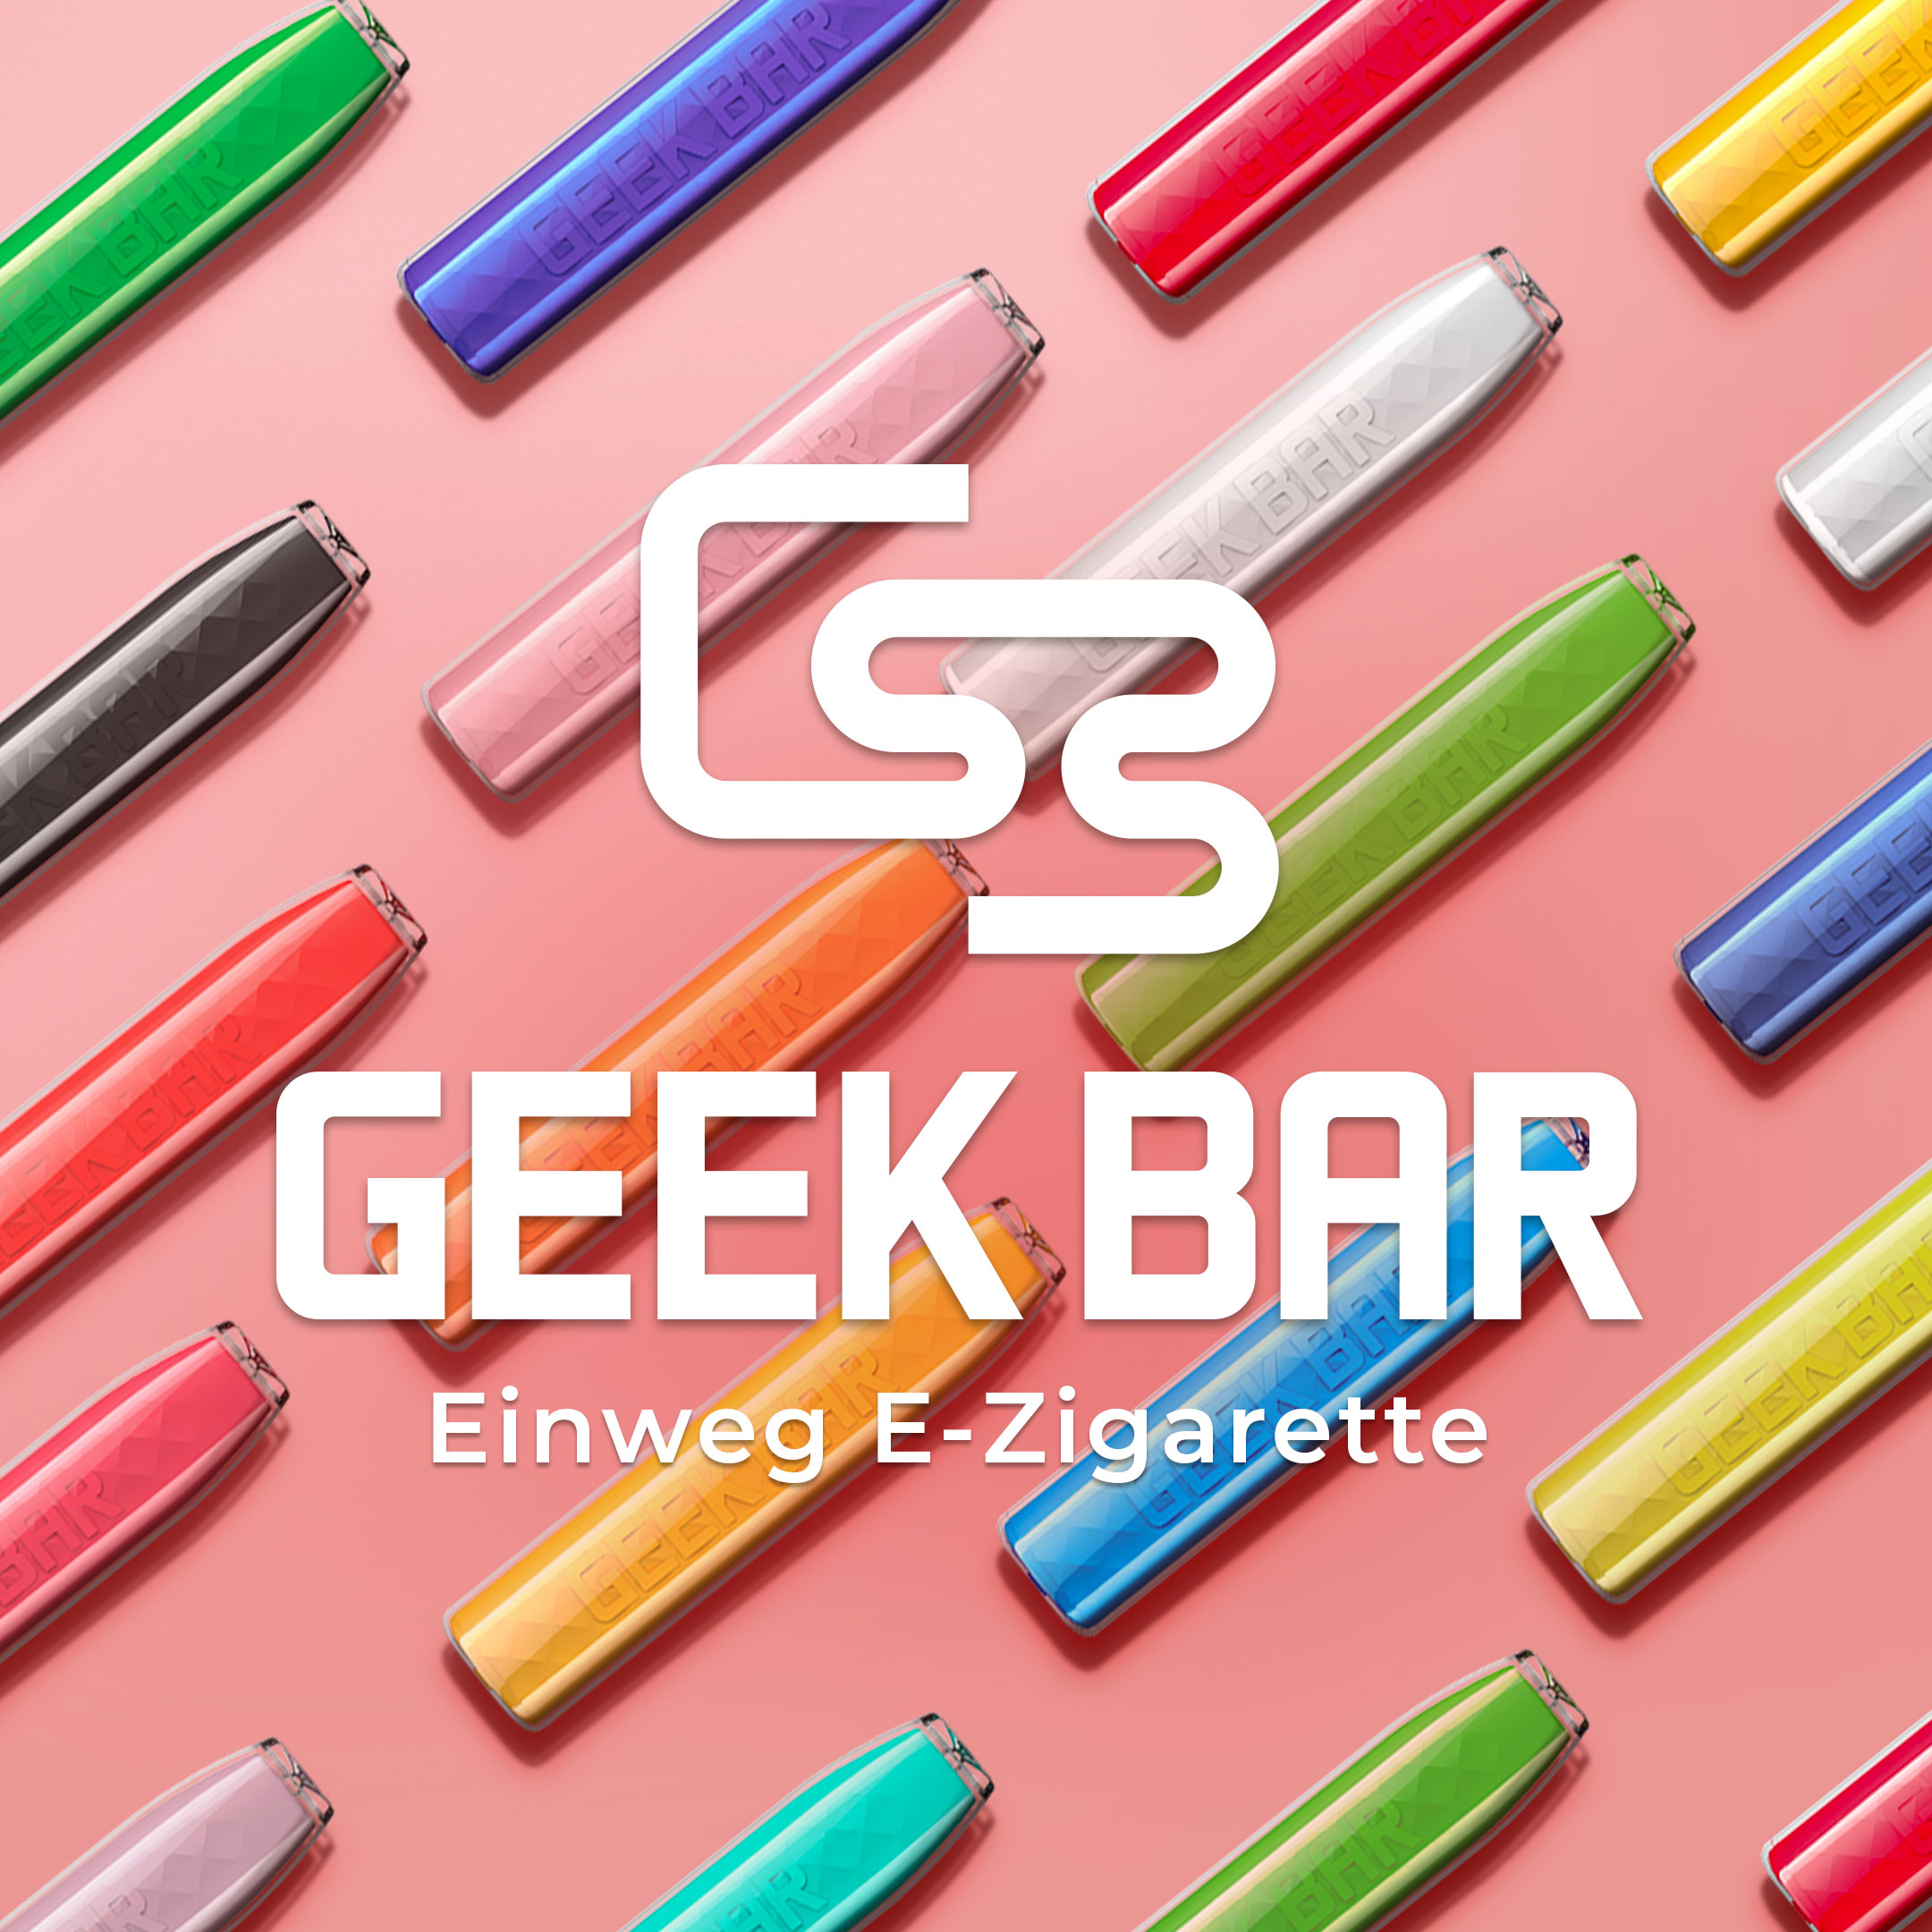 GEEKBAR by Geekvape - Einweg E-Zigarette Vape Pen 20mg/ml Peach ICE